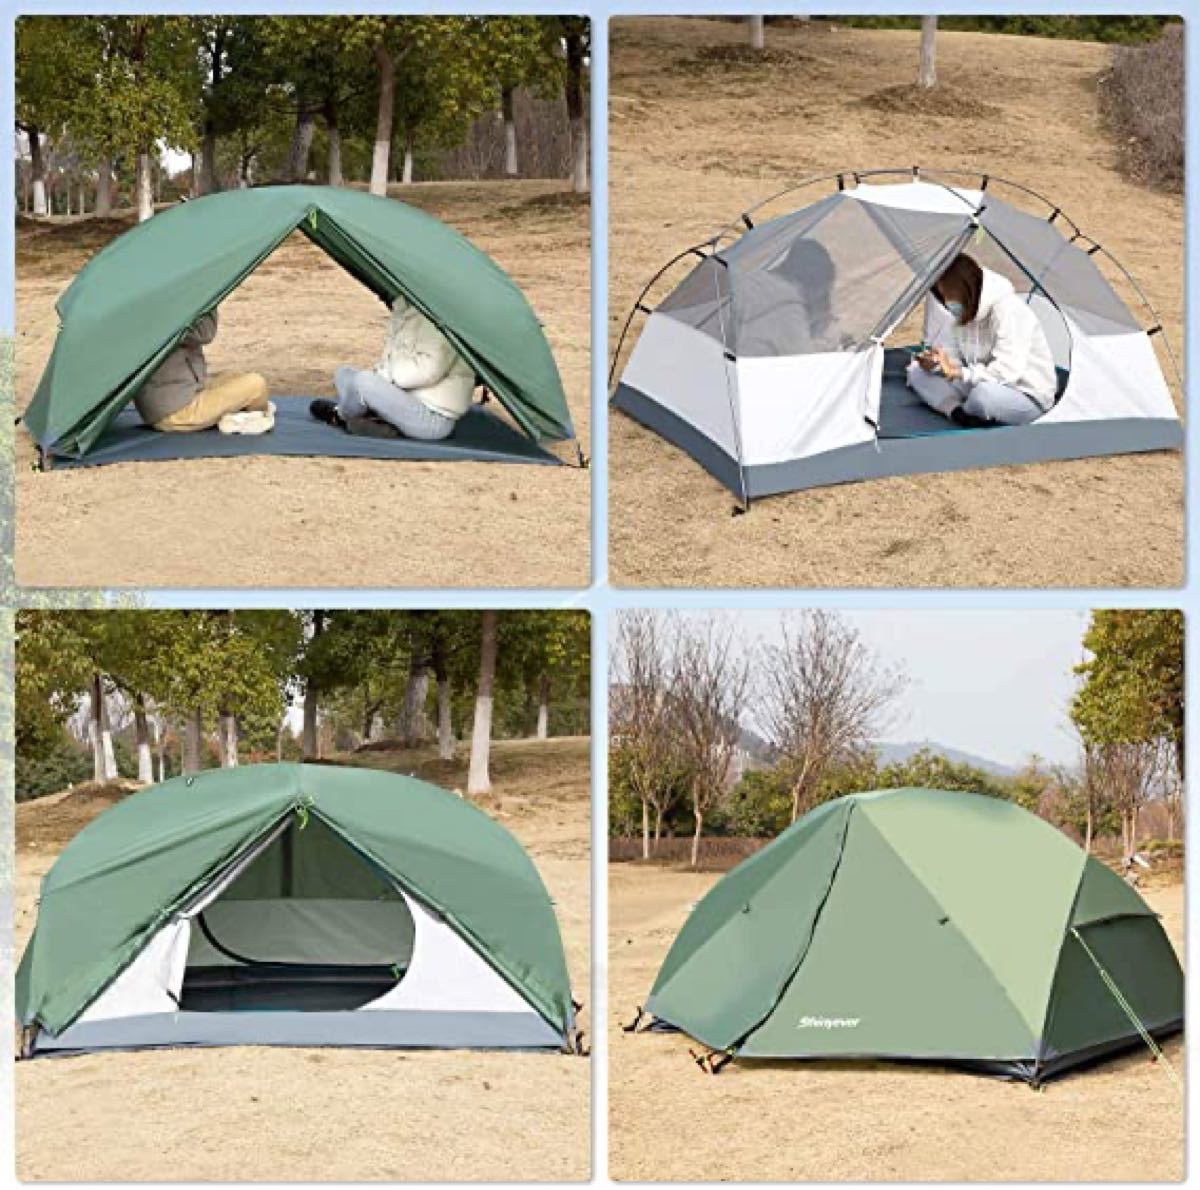 テント 2人用 キャンプテント アウトドアテント 広いスペース 二重層 超軽量